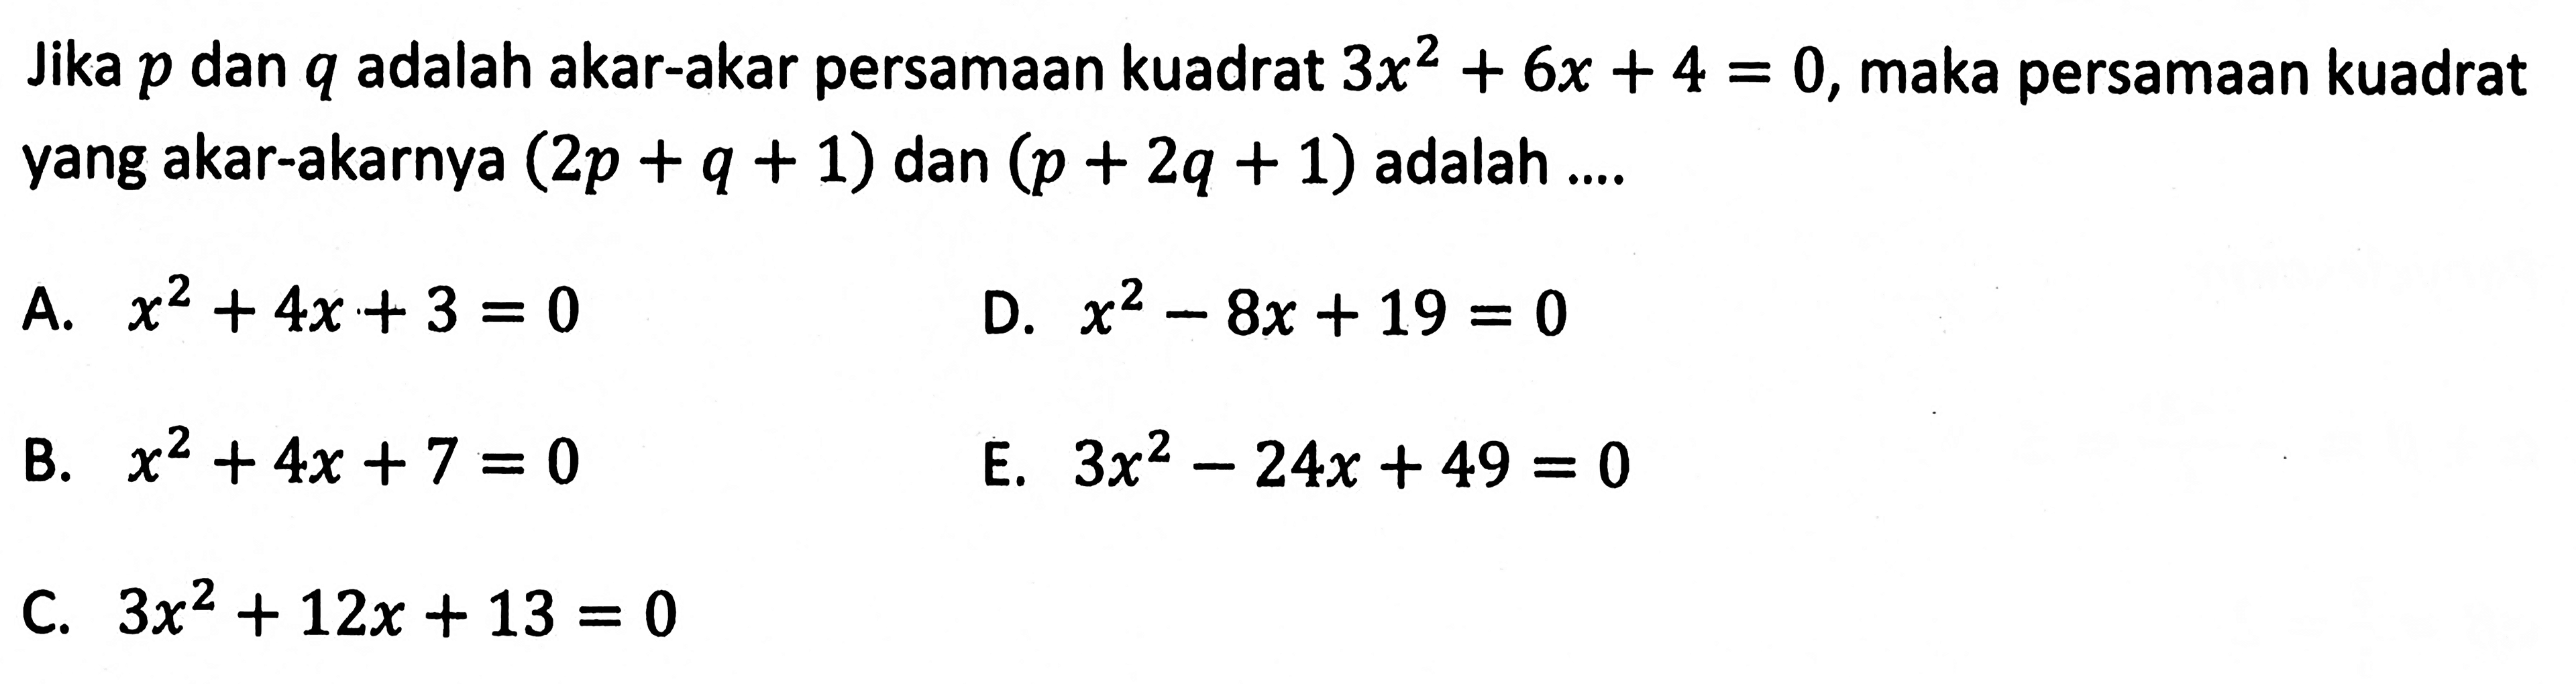 Jika p dan q adalah akar-akar persamaan kuadrat 3x^2 + 6x + 4 = 0, maka persamaan kuadrat yang akar-akarnya (2p + q + 1) dan (p + 2q + 1) adalah... A. x^2 + 4x + 3 = 0 D. x^2 - 8x + 19 = 0 B. x^2 + 4x + 7 = 0 E. 3x^2 - 24x + 49 = 0 C. 3x^2 + 12x + 13 = 0